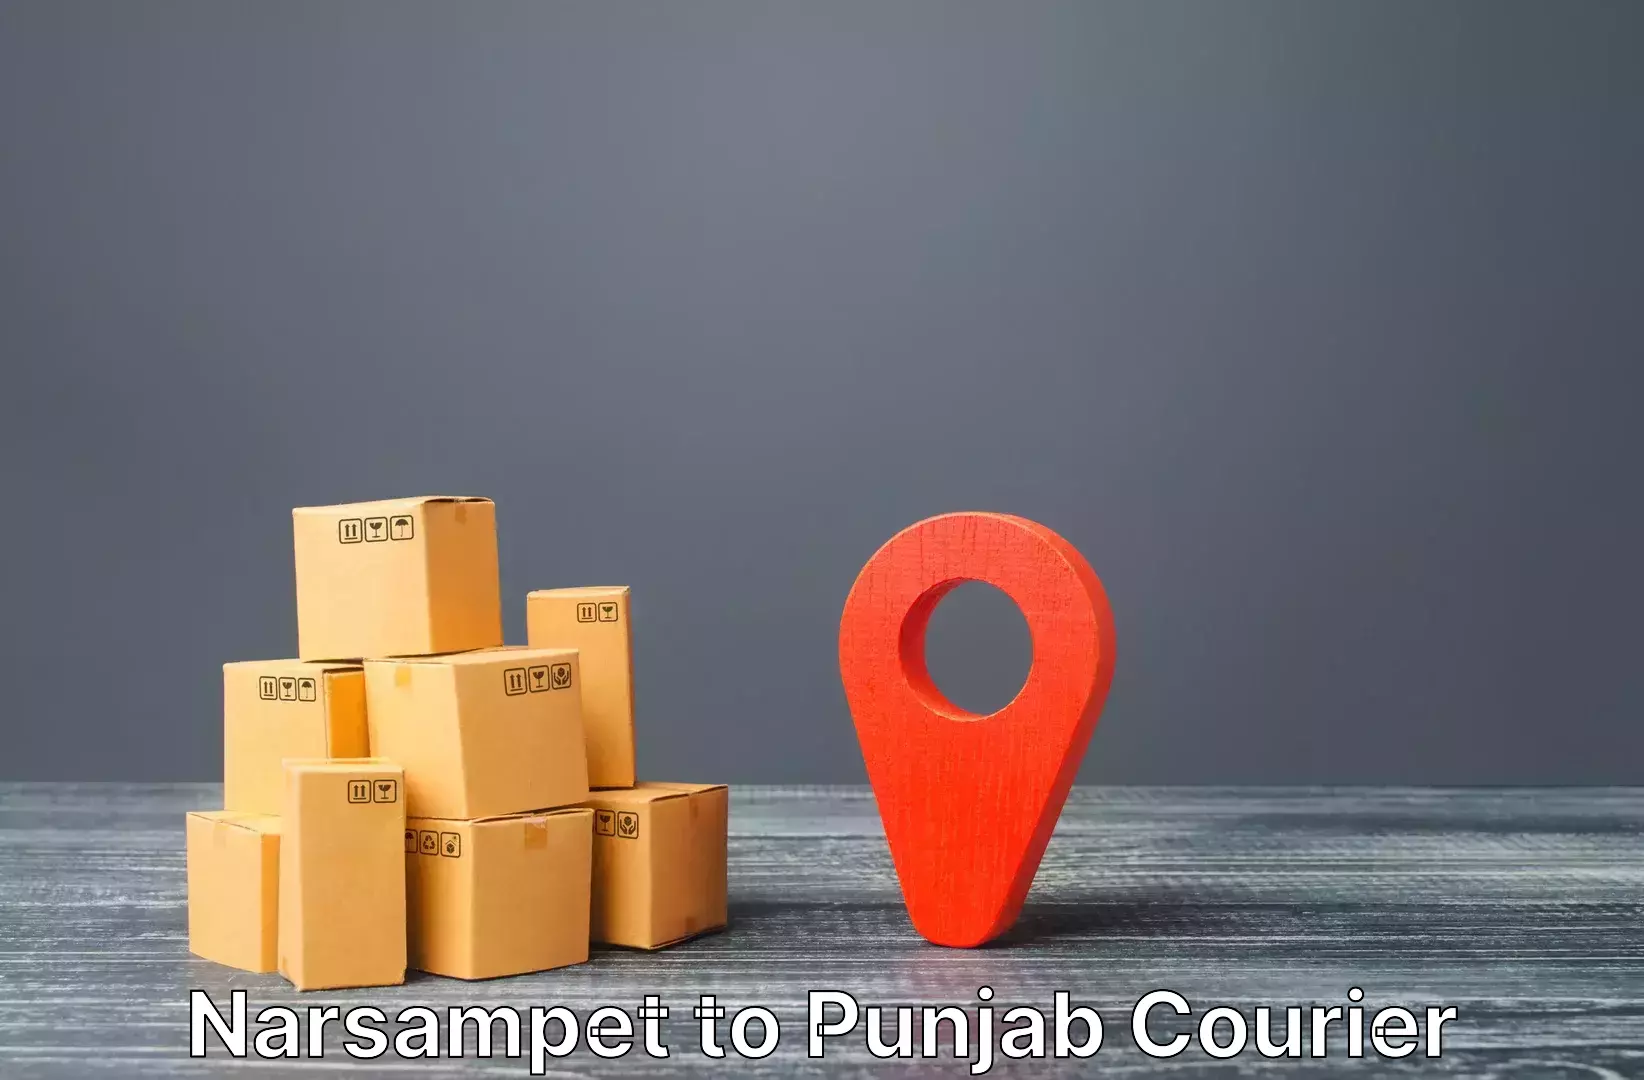 Luggage delivery logistics Narsampet to Punjab